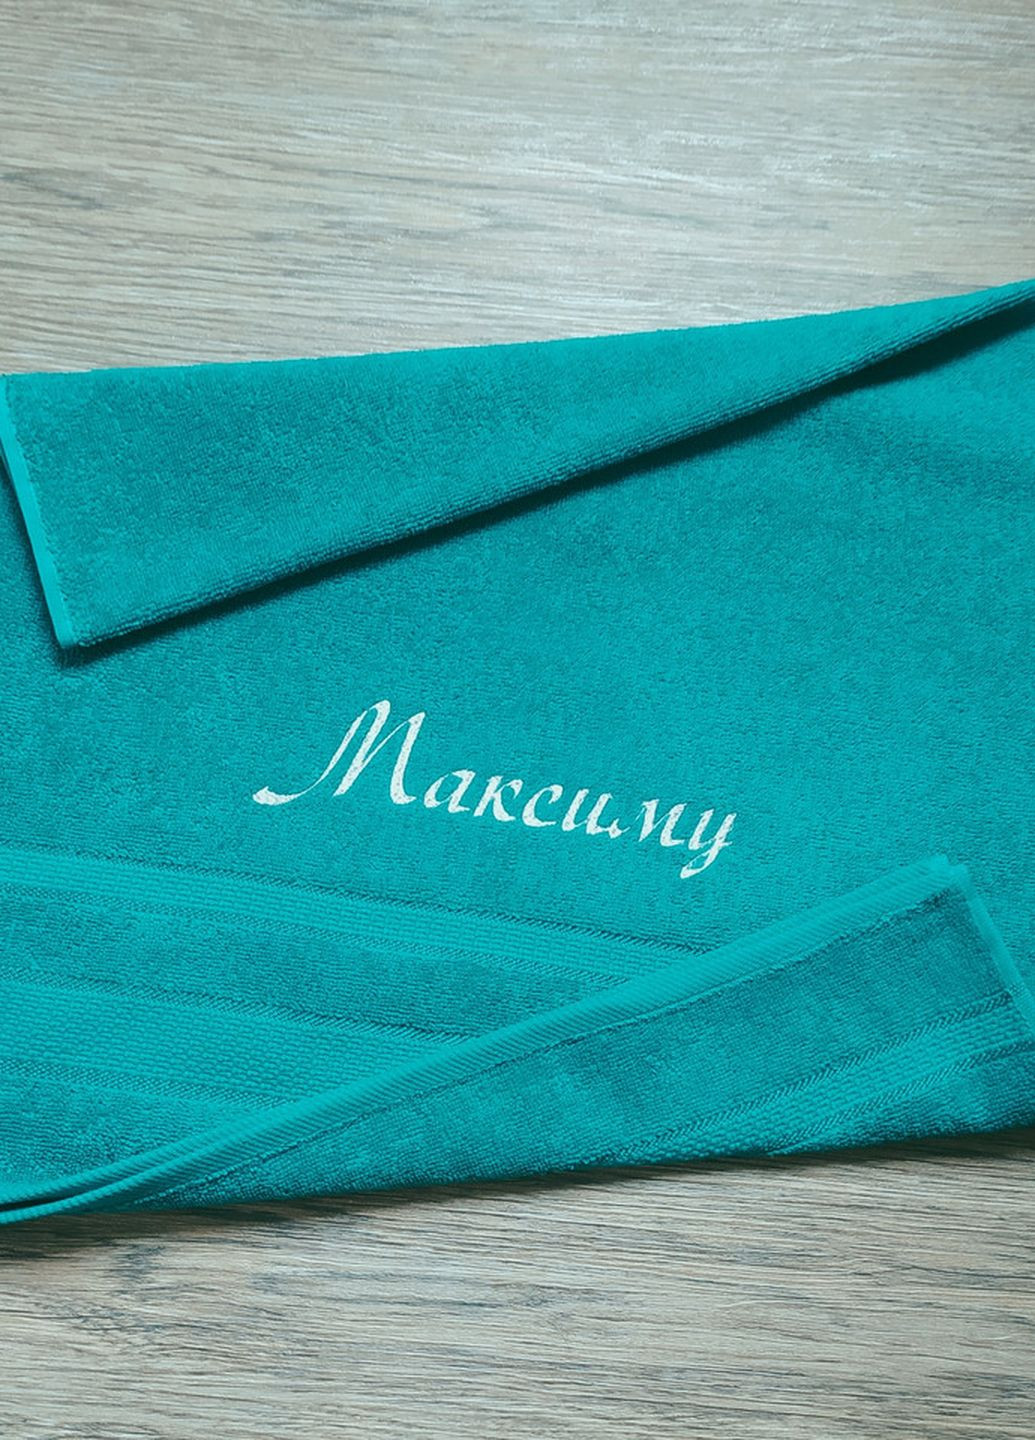 No Brand полотенце с именной вышивкой махровое лицевое 50*90 бирюзовый максиму (00030) однотонный бирюзовый производство - Украина